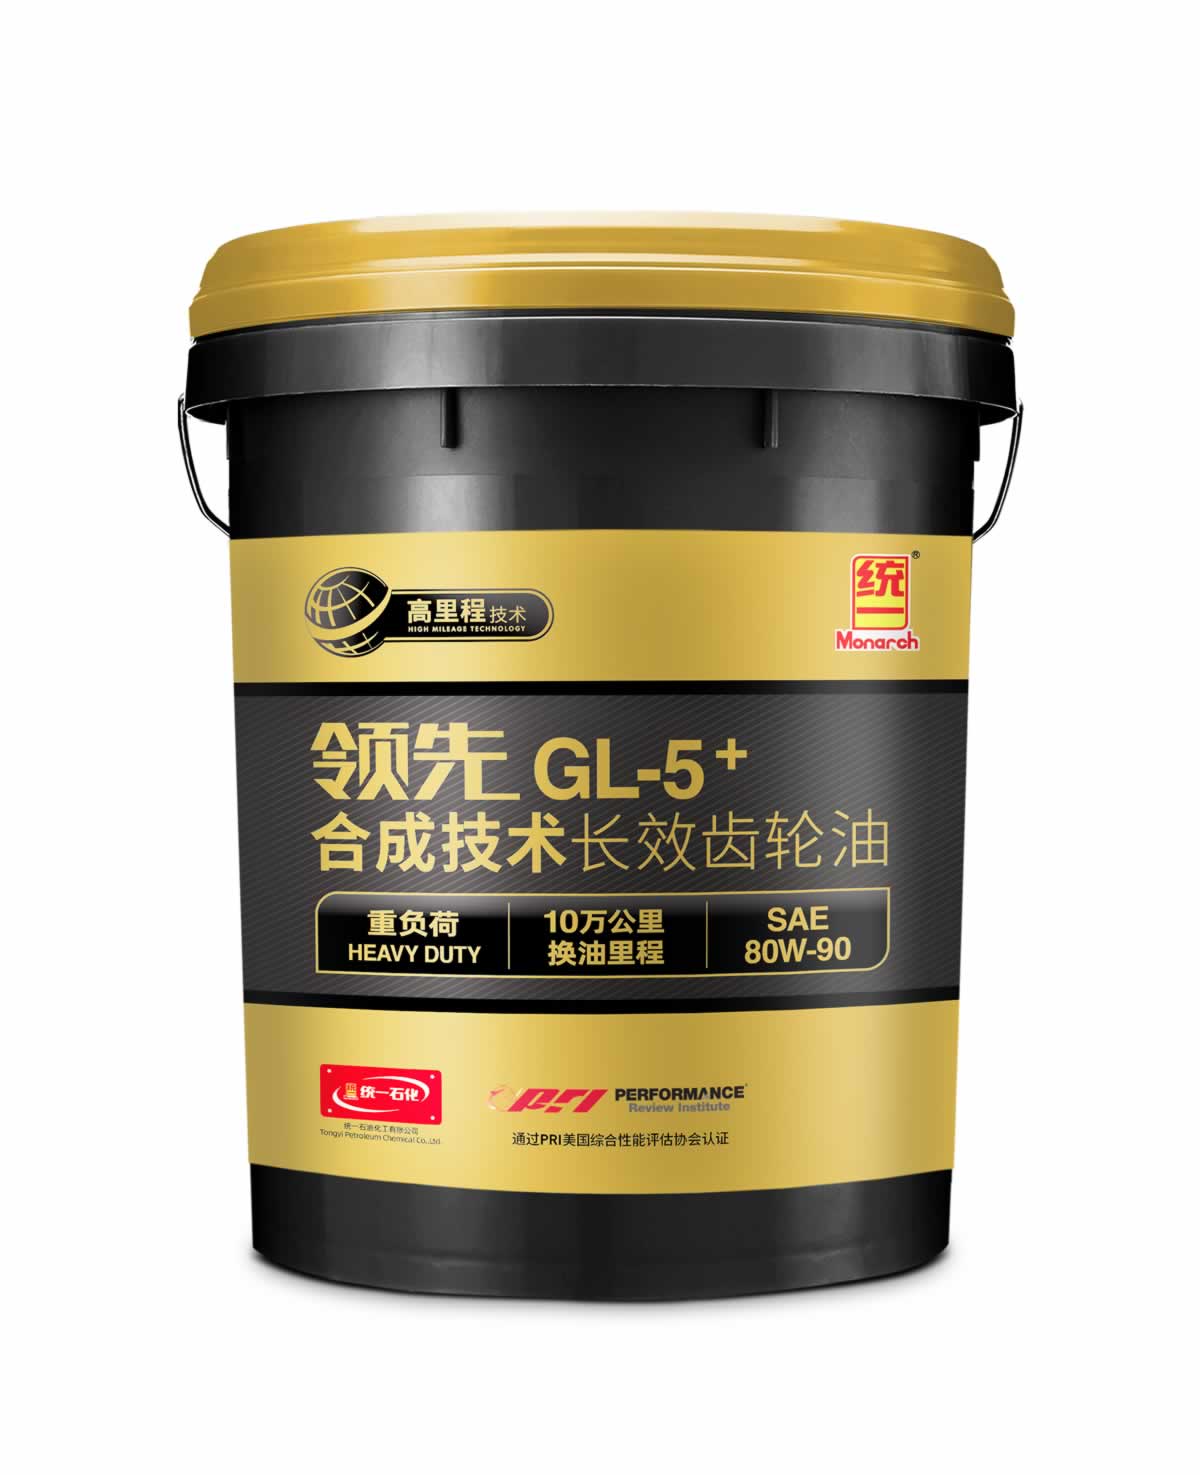 领先GL-5+合成技术长效重负荷齿轮油